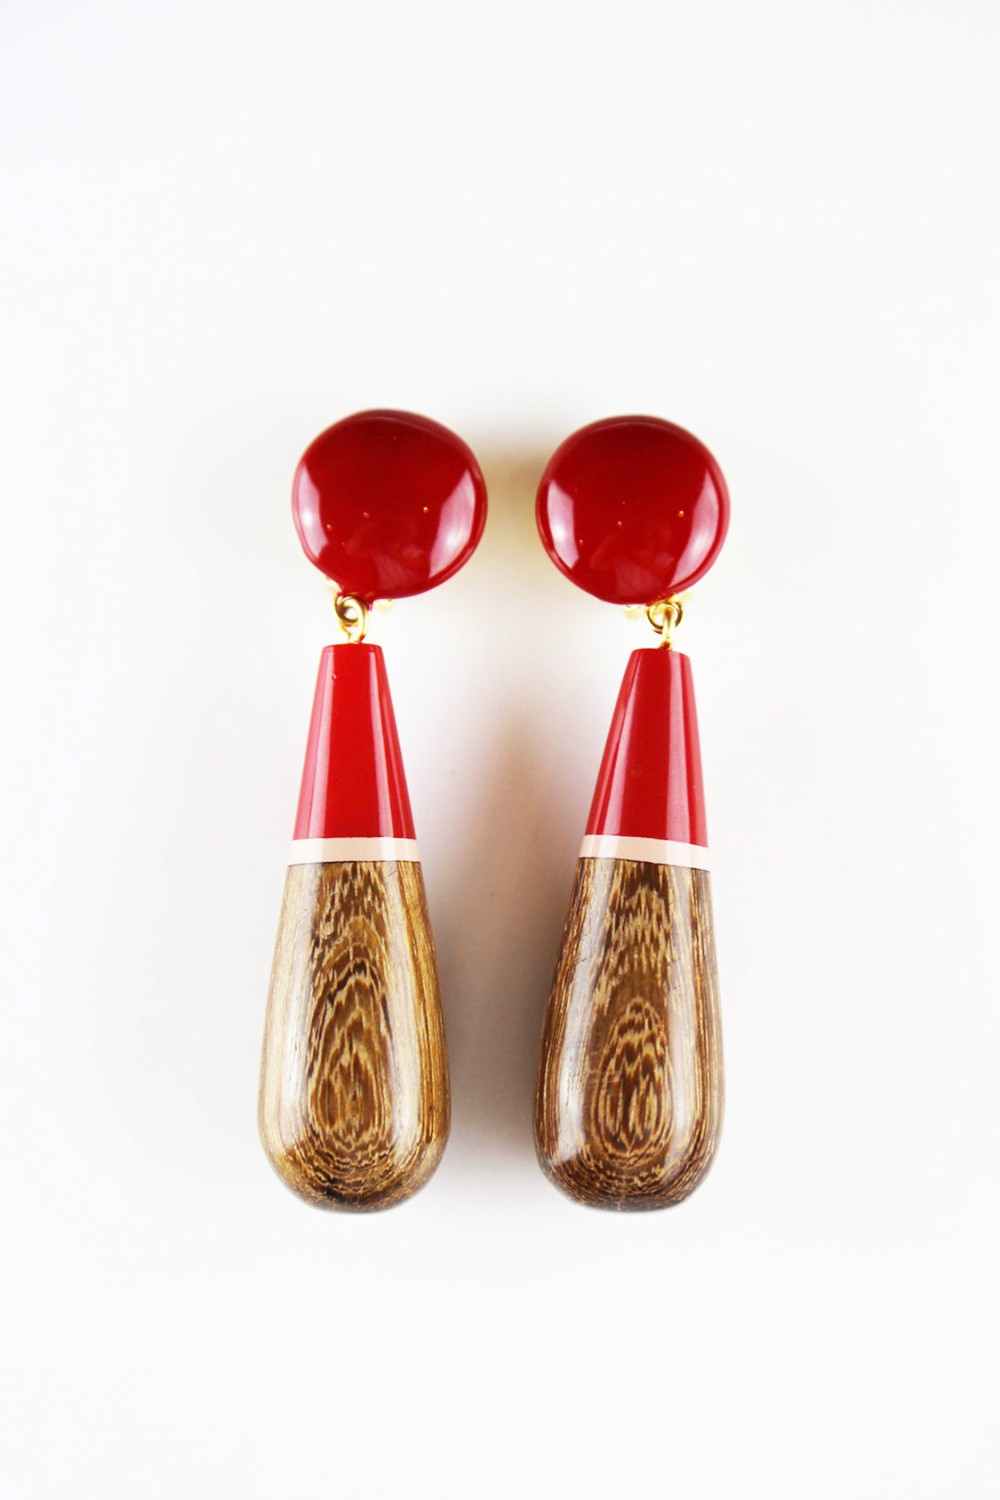 shop Marni Saldi Bijoux: Orecchini Marni in legno pendenti, tenuti da una clip tonda, color rosso e marrone, lunghezza 8 cm, clip posteriore.  number 728